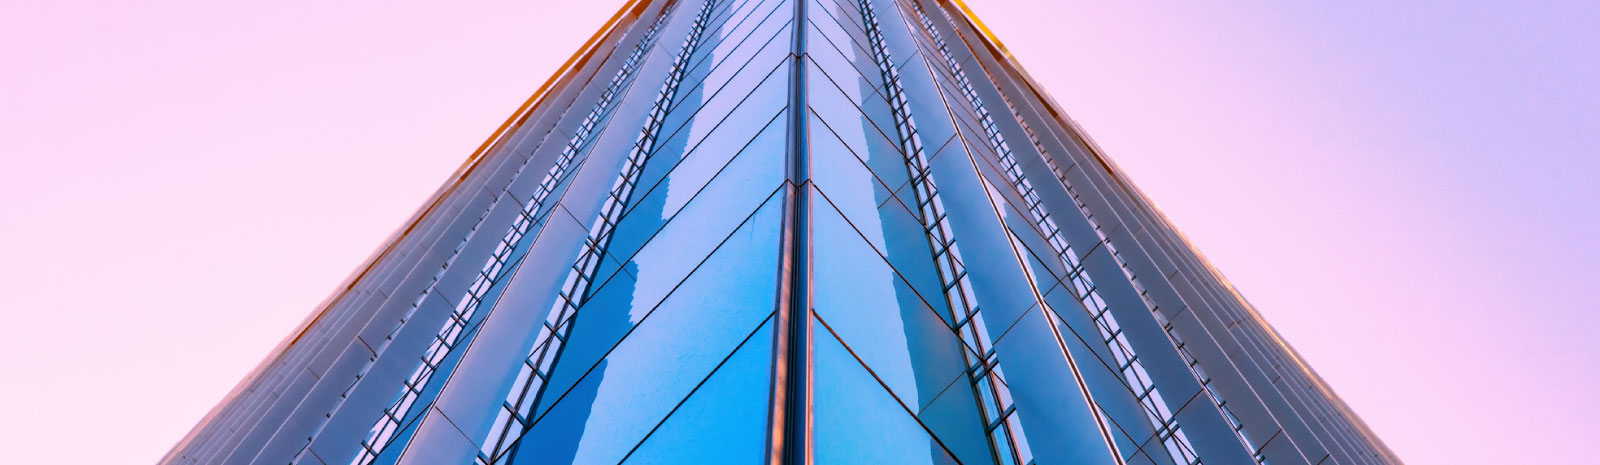 unique view of commercial building